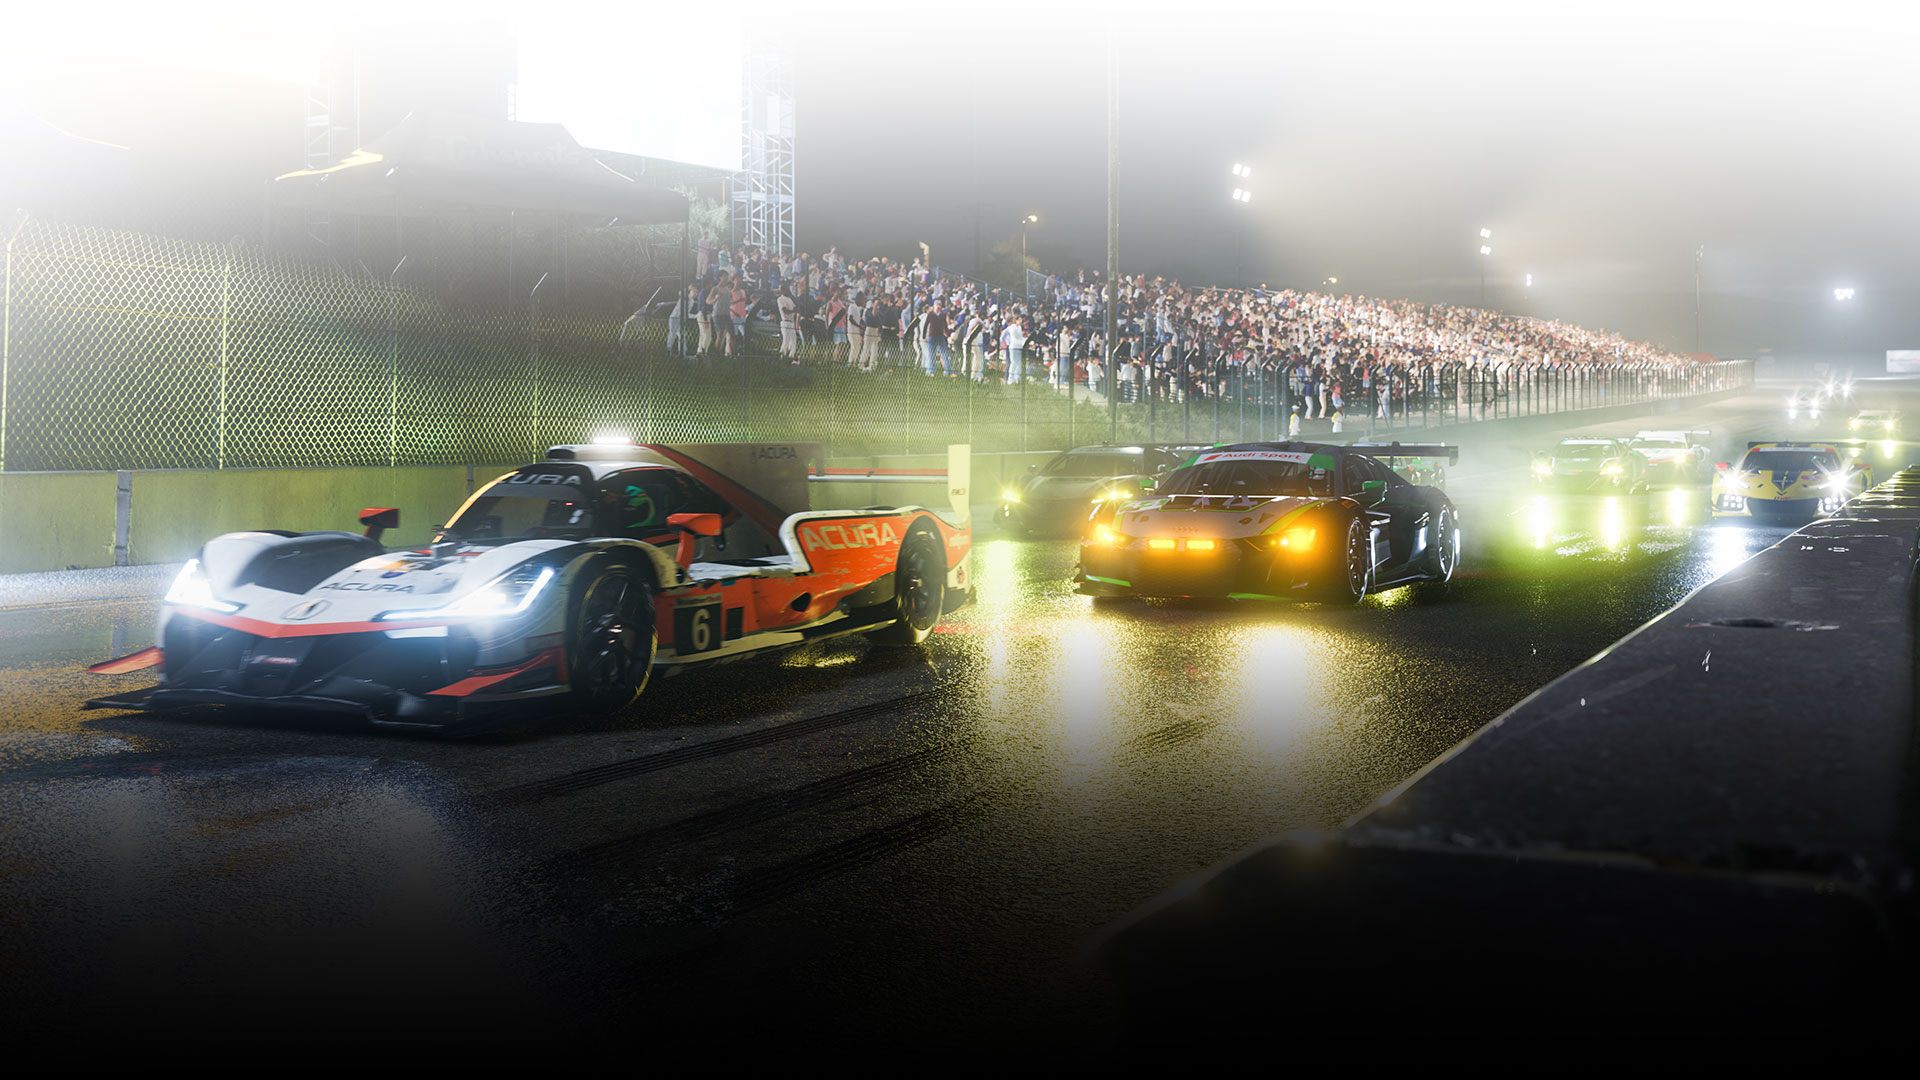 Varios autos de carreras se alinean en un circuito húmedo por la noche.